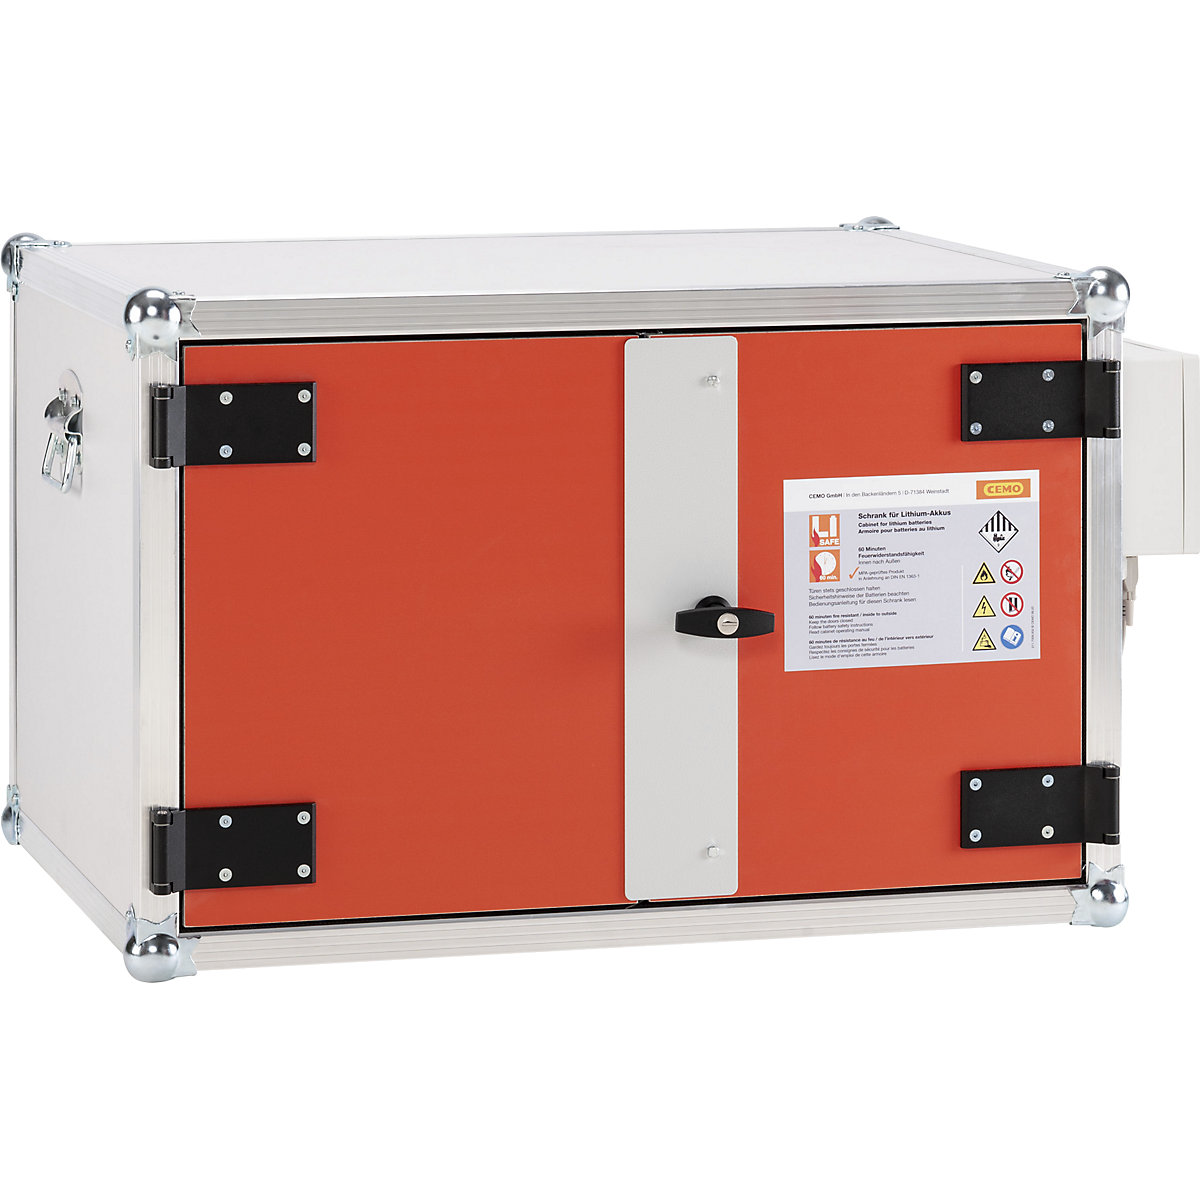 Bezpečnostná skriňa na nabíjanie akumulátorov FWF 60 – CEMO, PREMIUM PLUS, š x h x v 890 x 660 x 520 mm, oranžová / šedá